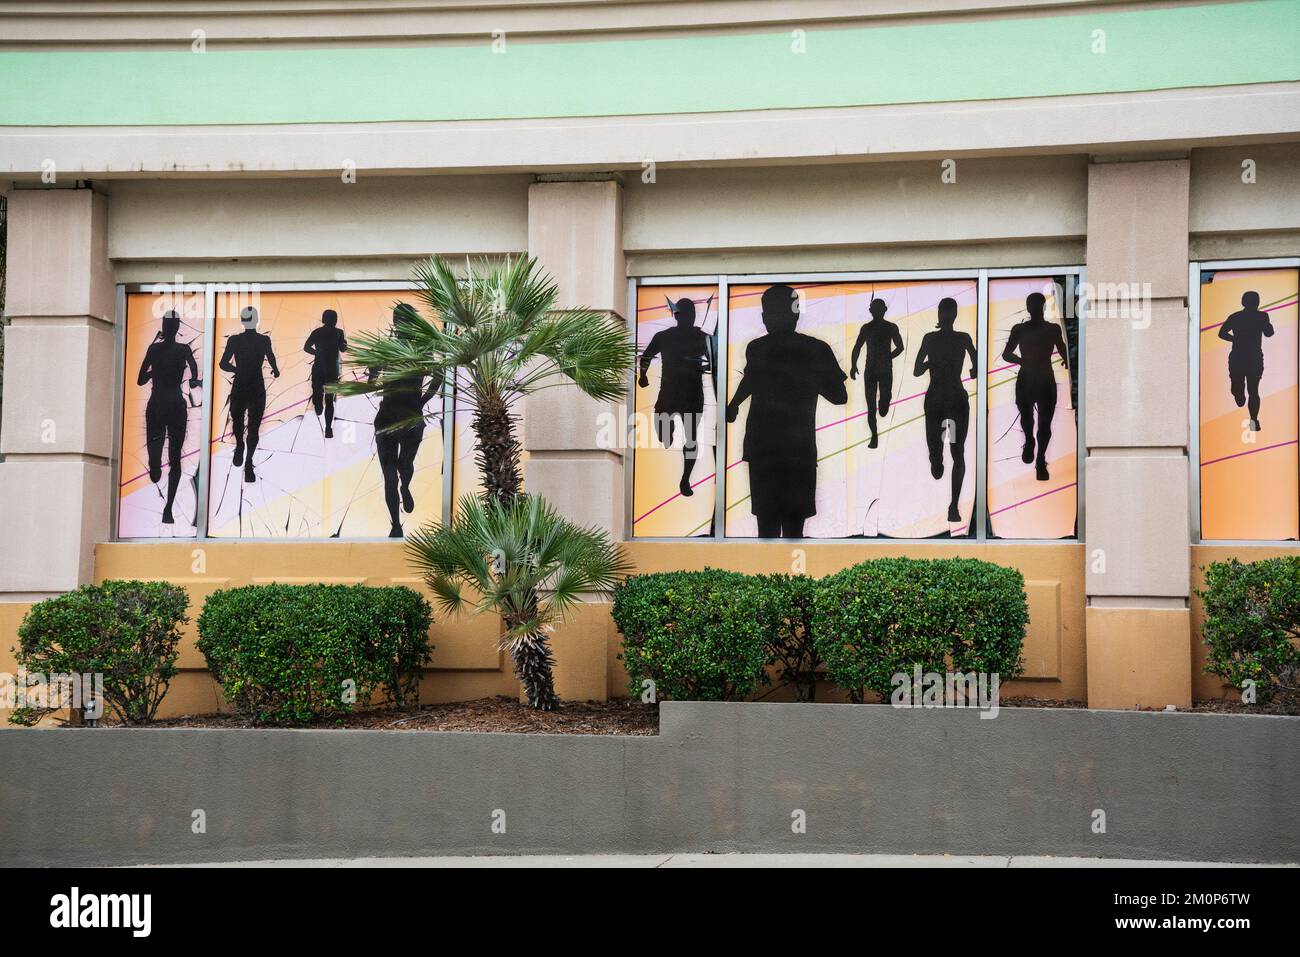 Wandgemälde von Läufern in Silhouette schmücken das Äußere von FIT 2 RUN, Fitness-Training Center in einem Florida Shopping Mall. Stockfoto